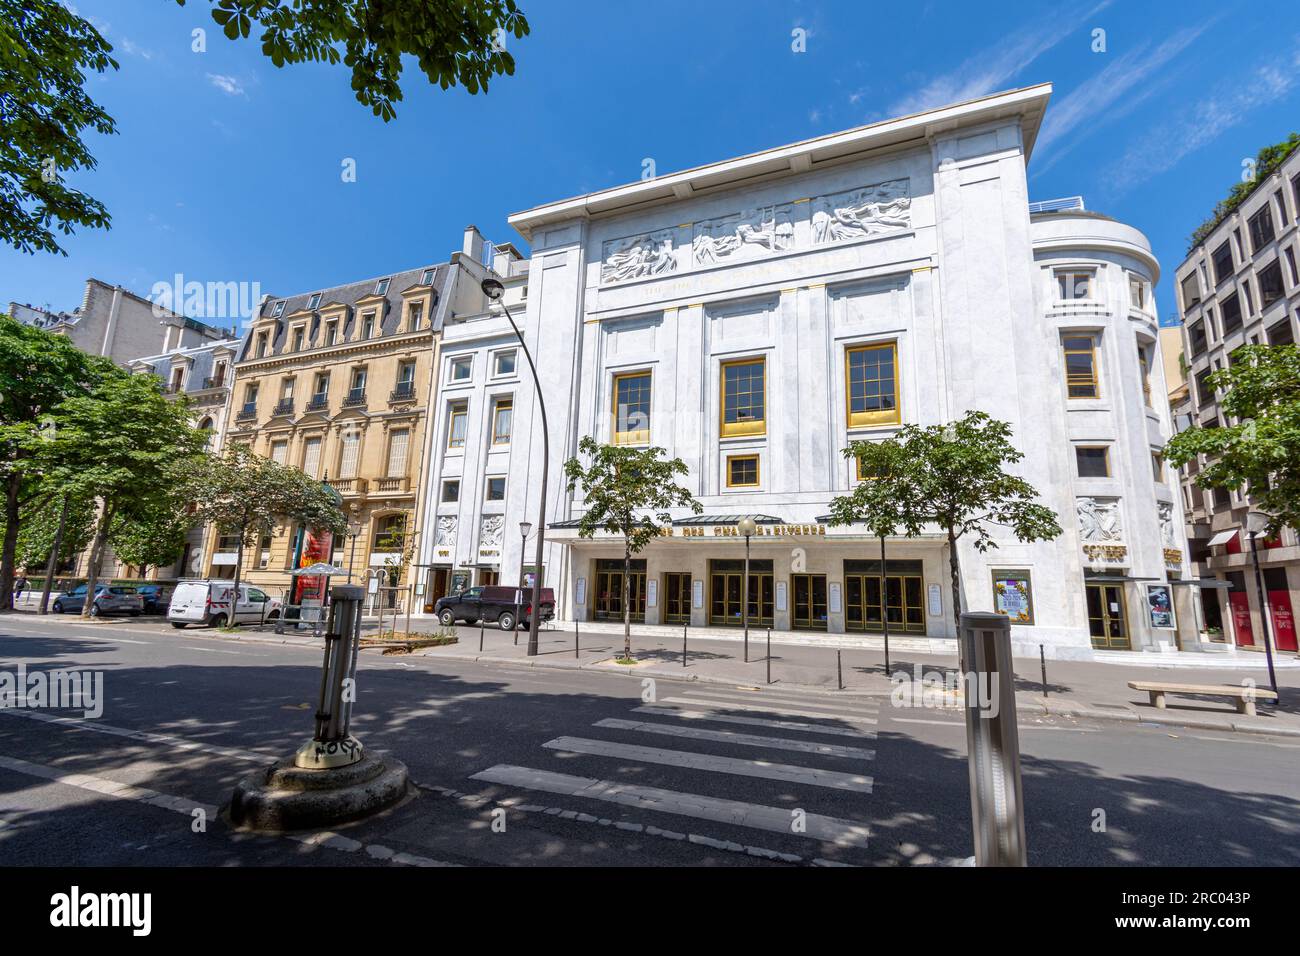 Vue extérieure du Théâtre des champs-Elysées, monument historique de style art déco situé avenue Montaigne, Paris, France Banque D'Images